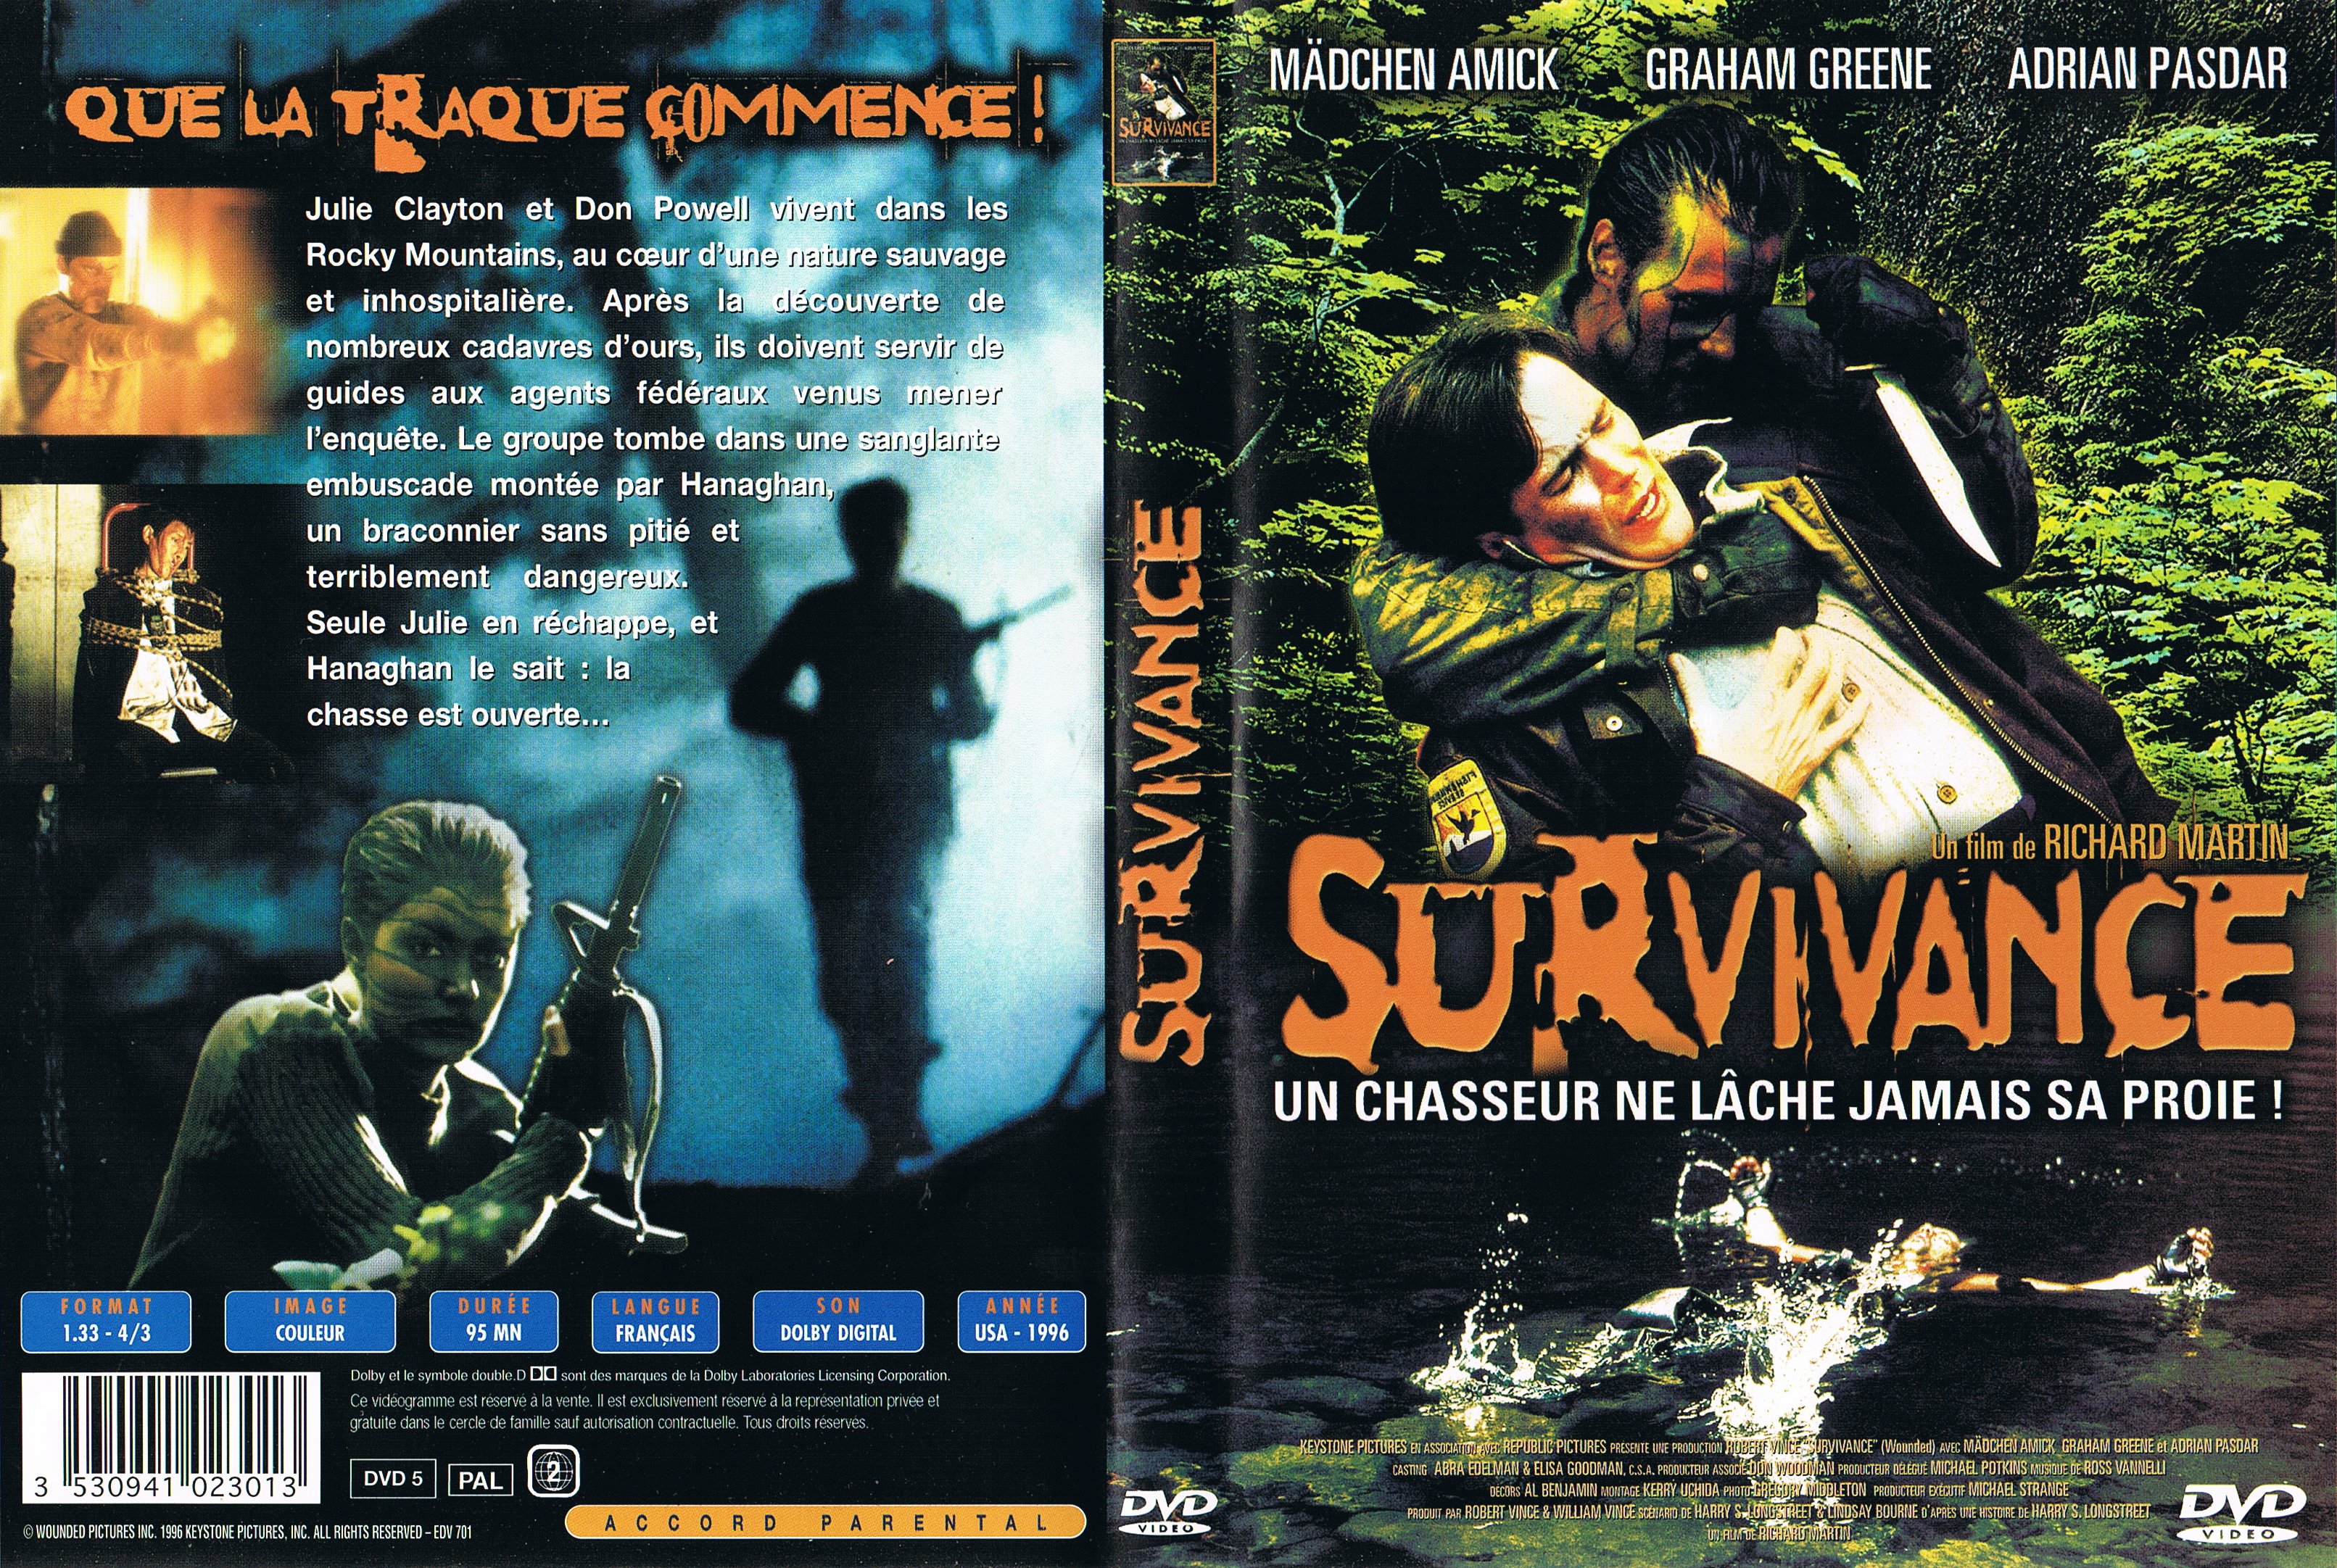 Jaquette DVD Survivance (1996)